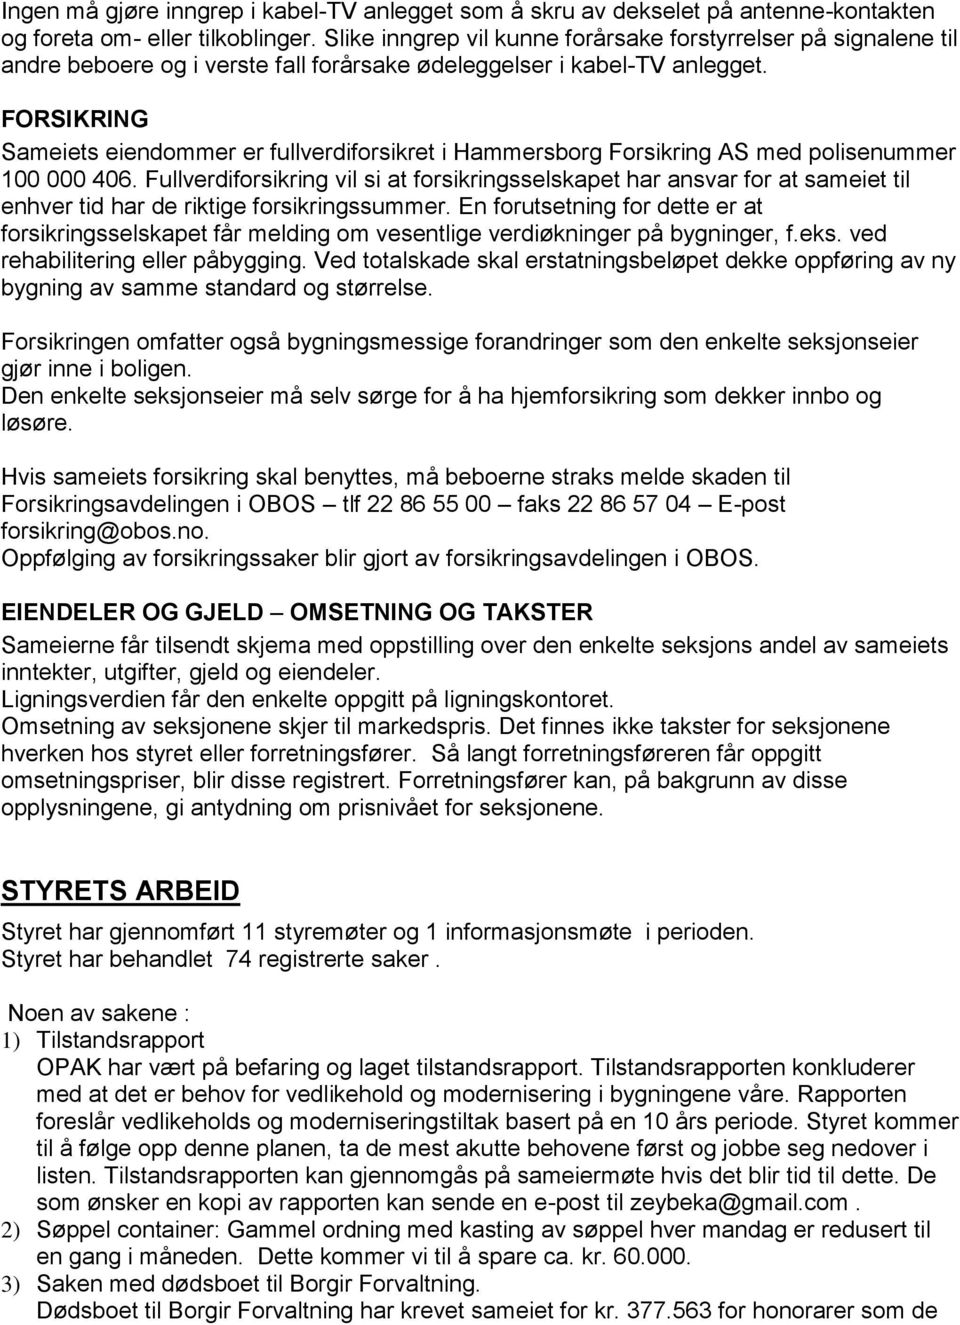 FORSIKRING Sameiets eiendommer er fullverdiforsikret i Hammersborg Forsikring AS med polisenummer 100 000 406.